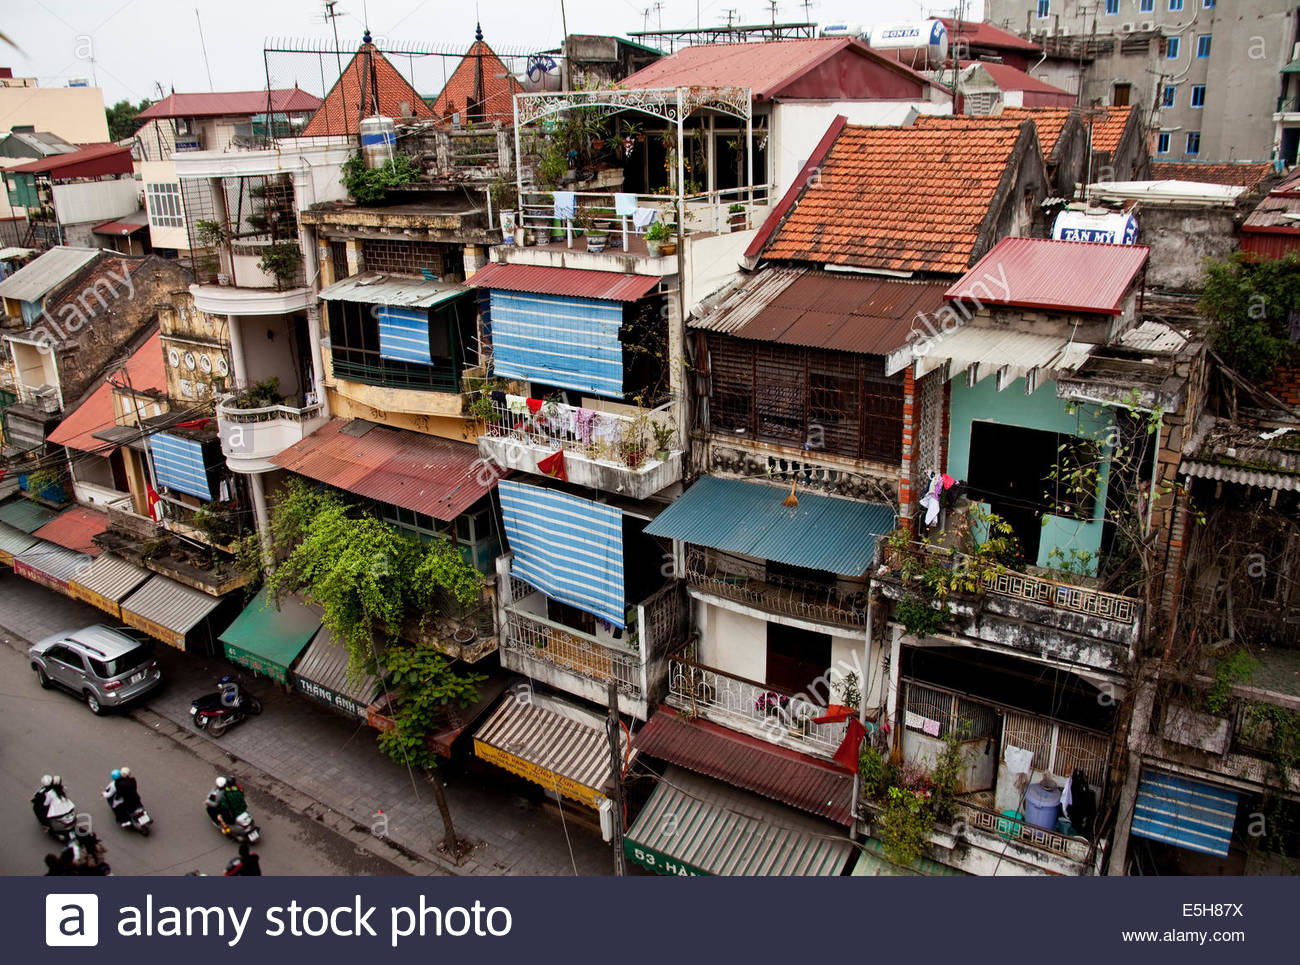 Hanoi narrow houses